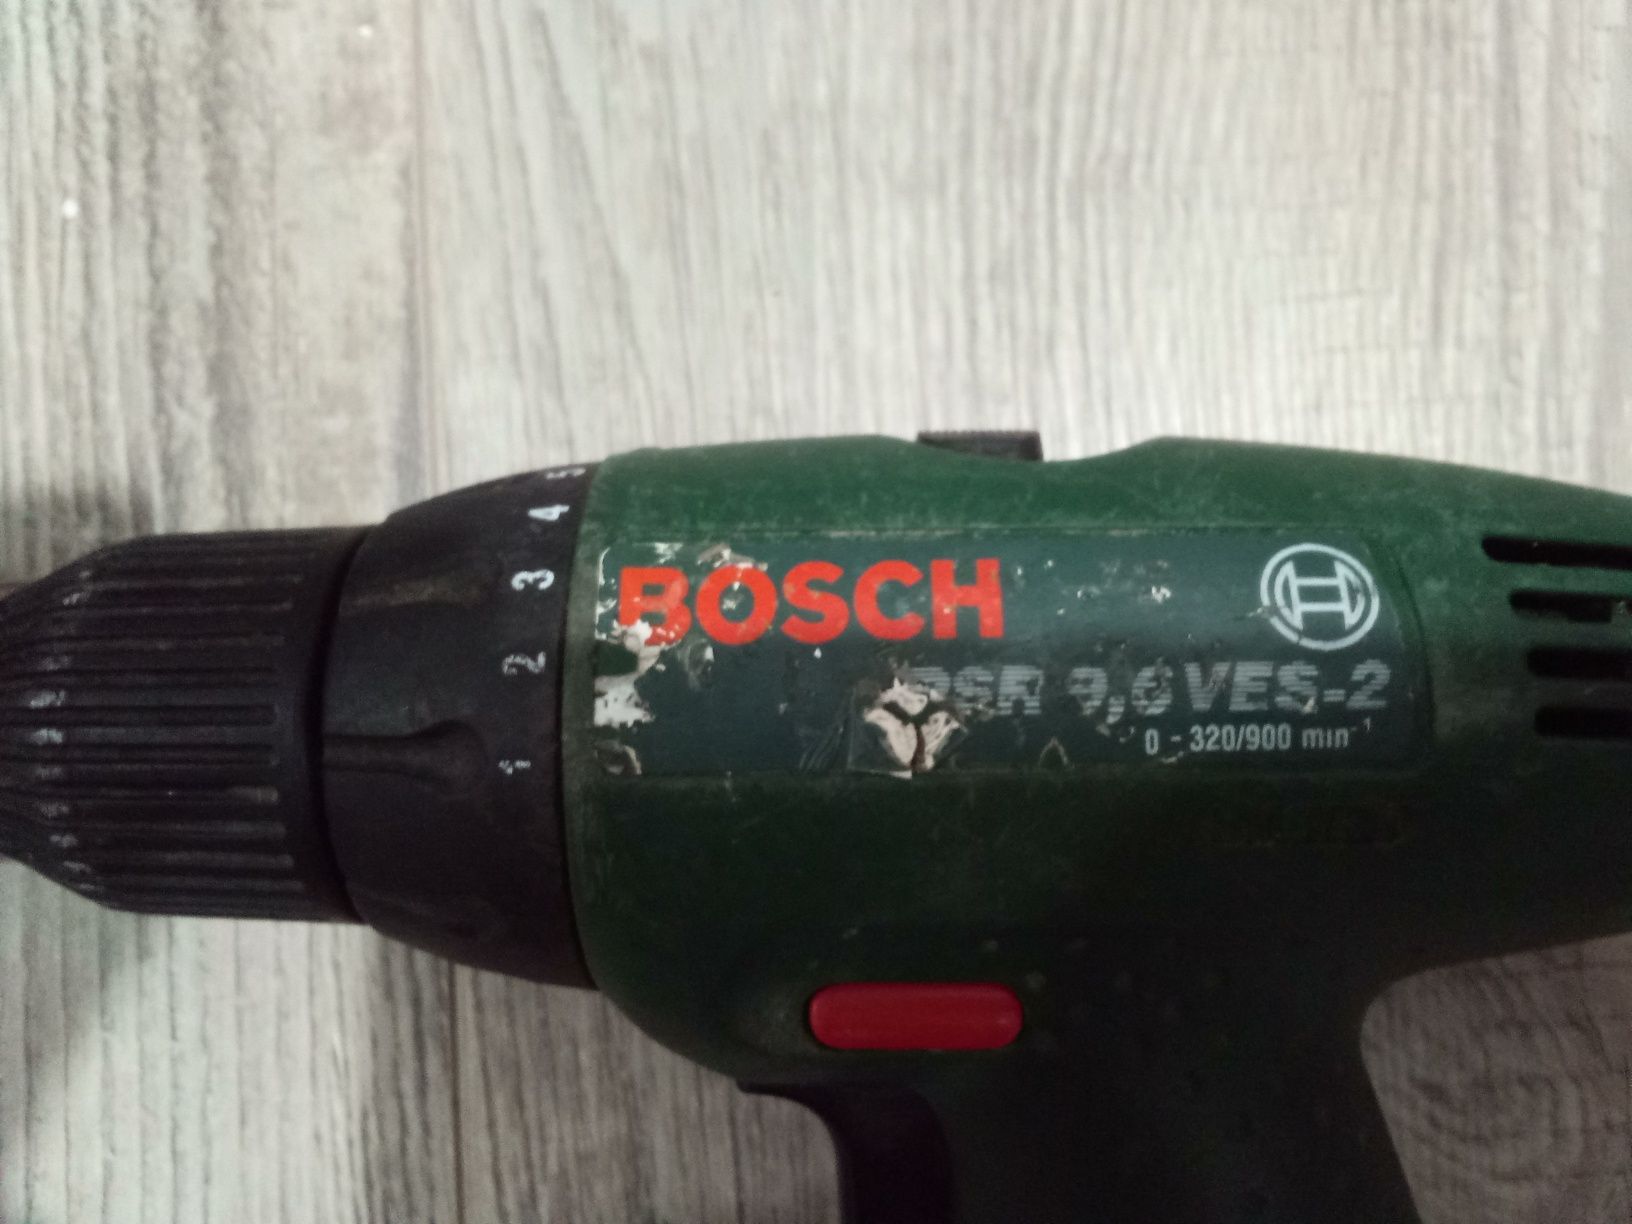 Wkrętarka Bosch RSR 9,6 VES-2